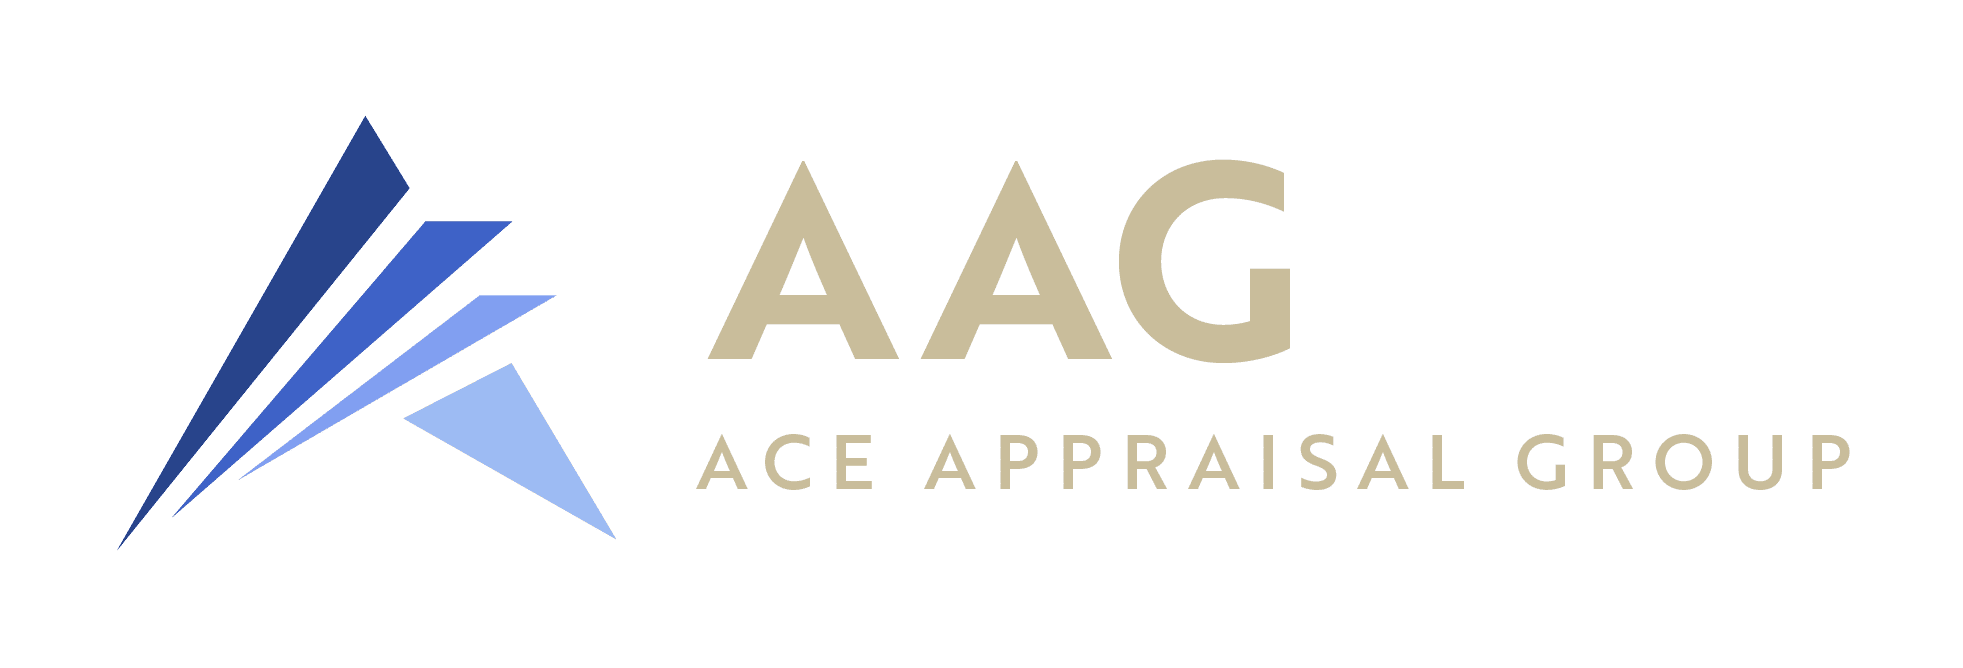 Ace Appraisal Group